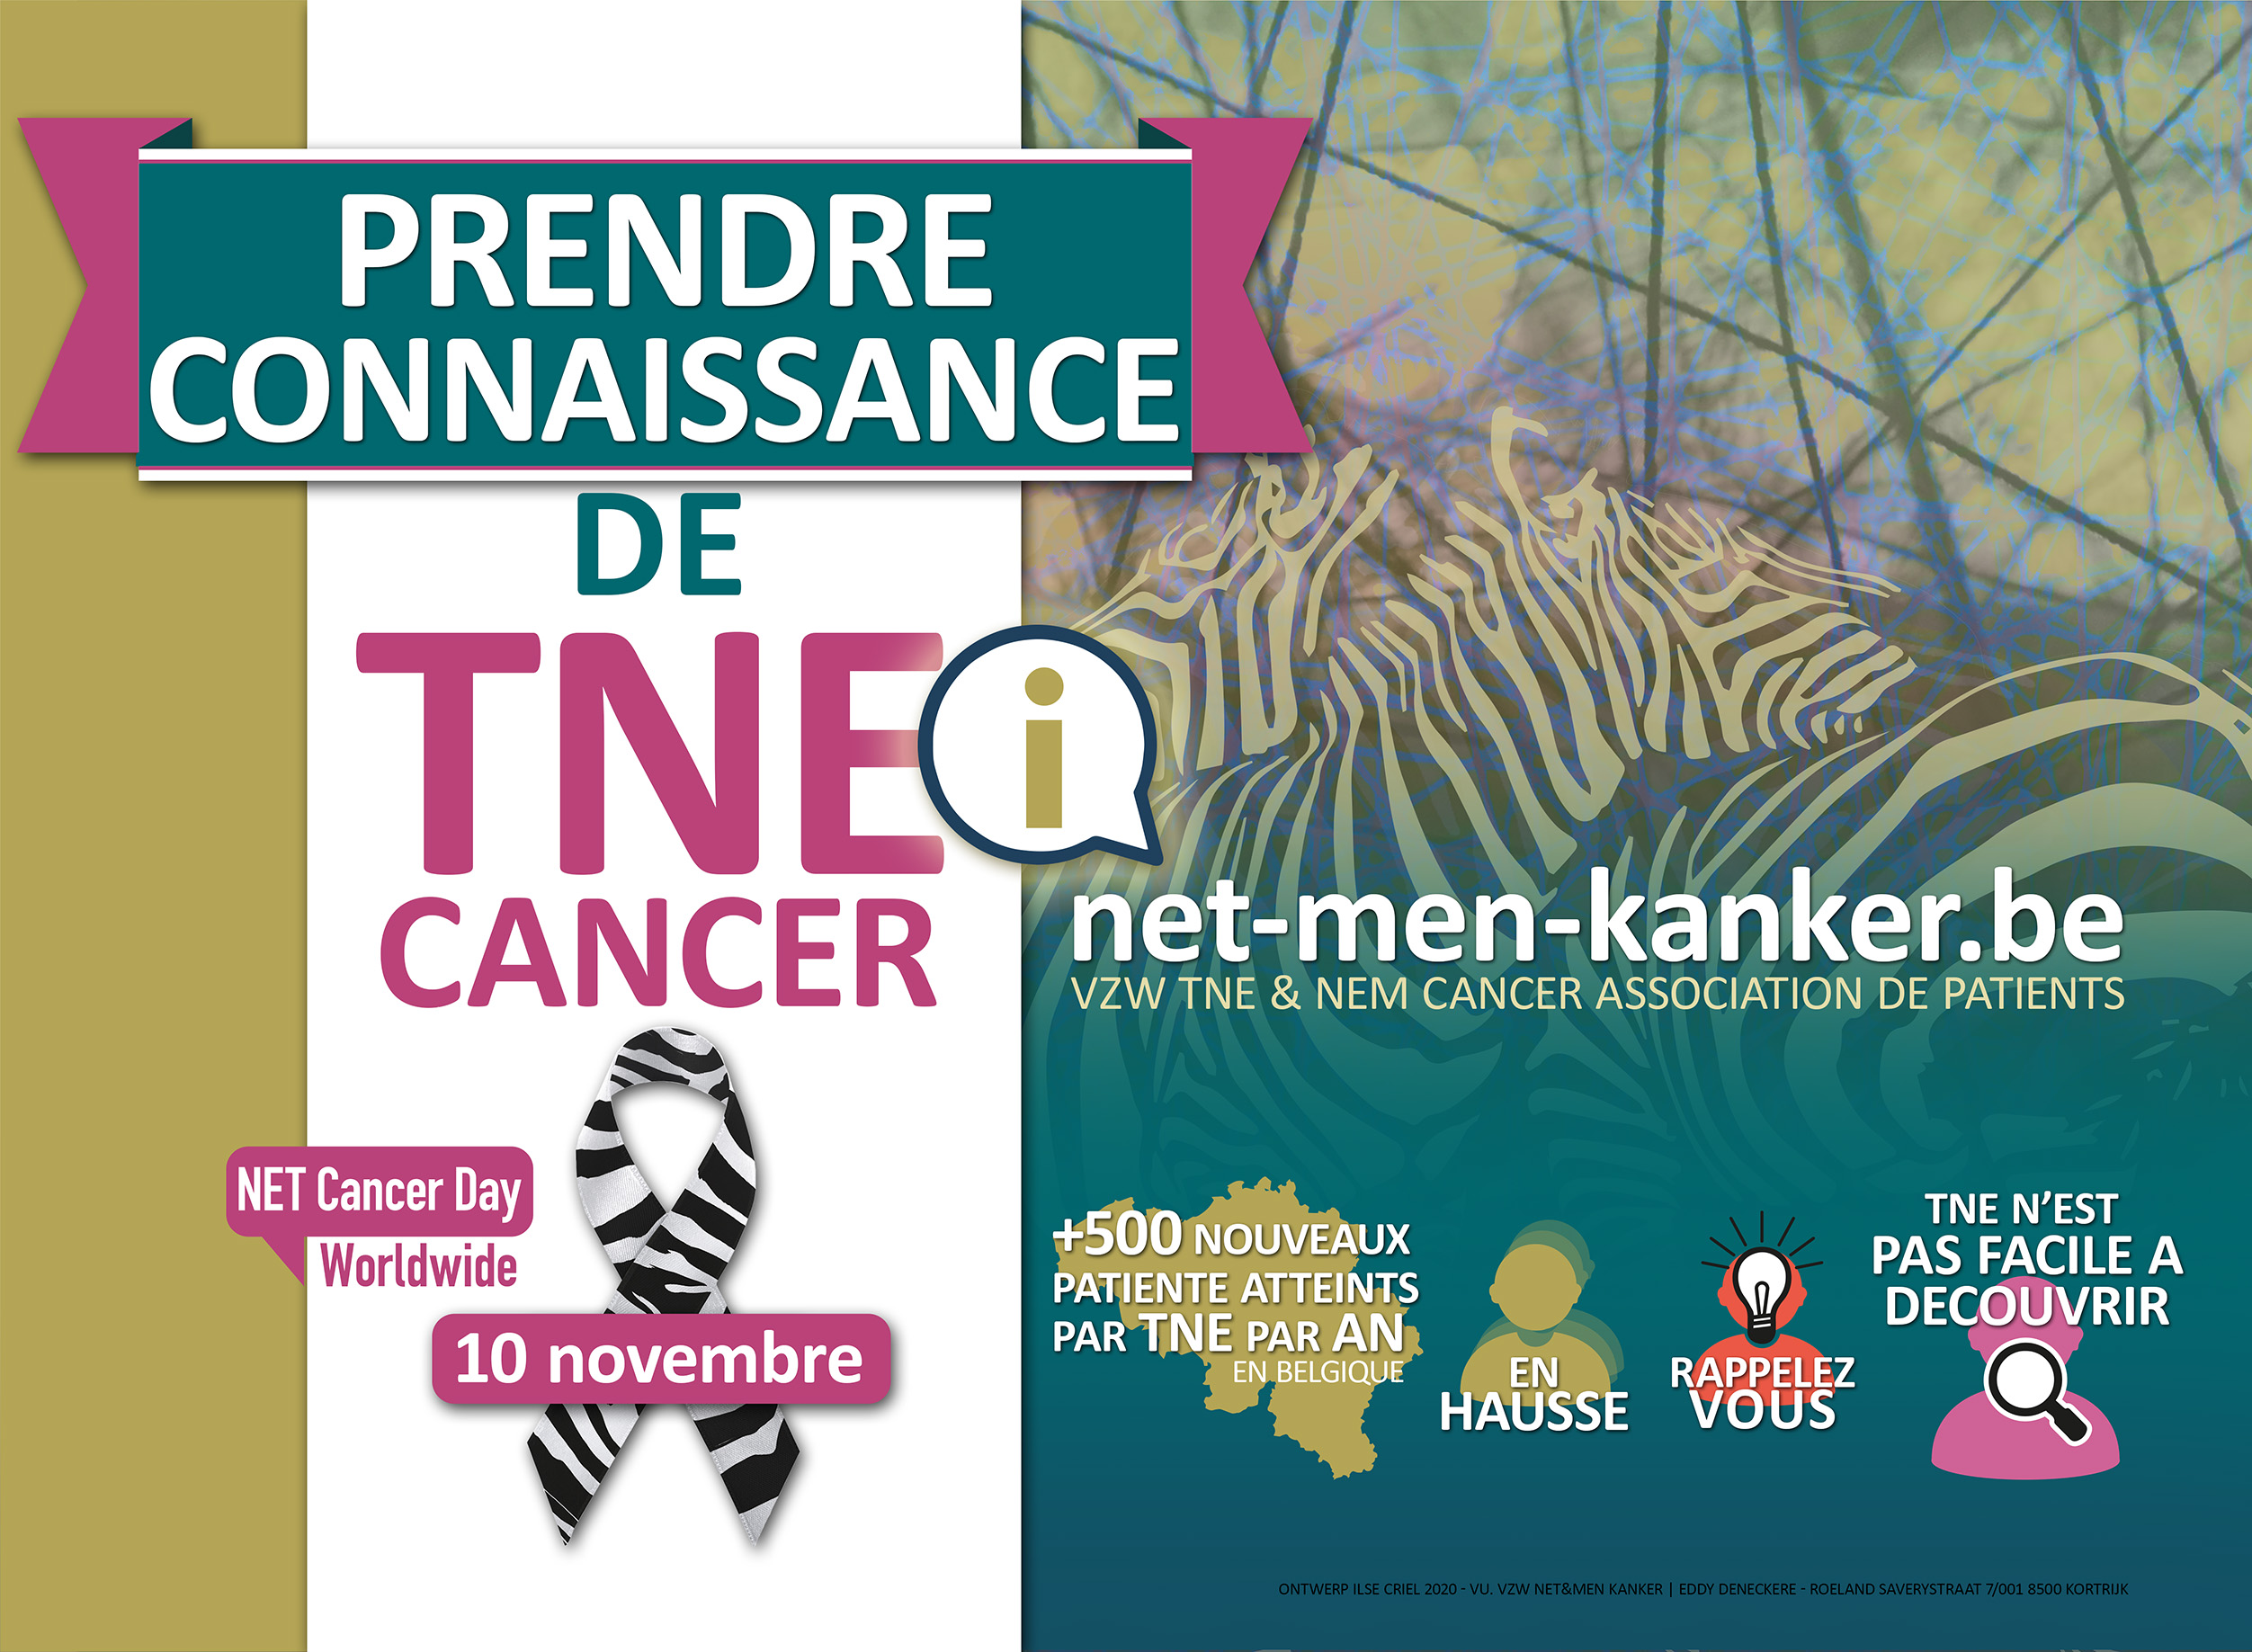 Affiche 'BEWUST WORDEN VAN NET' naar aanleiding van World NET Cancer Day op 10 november.